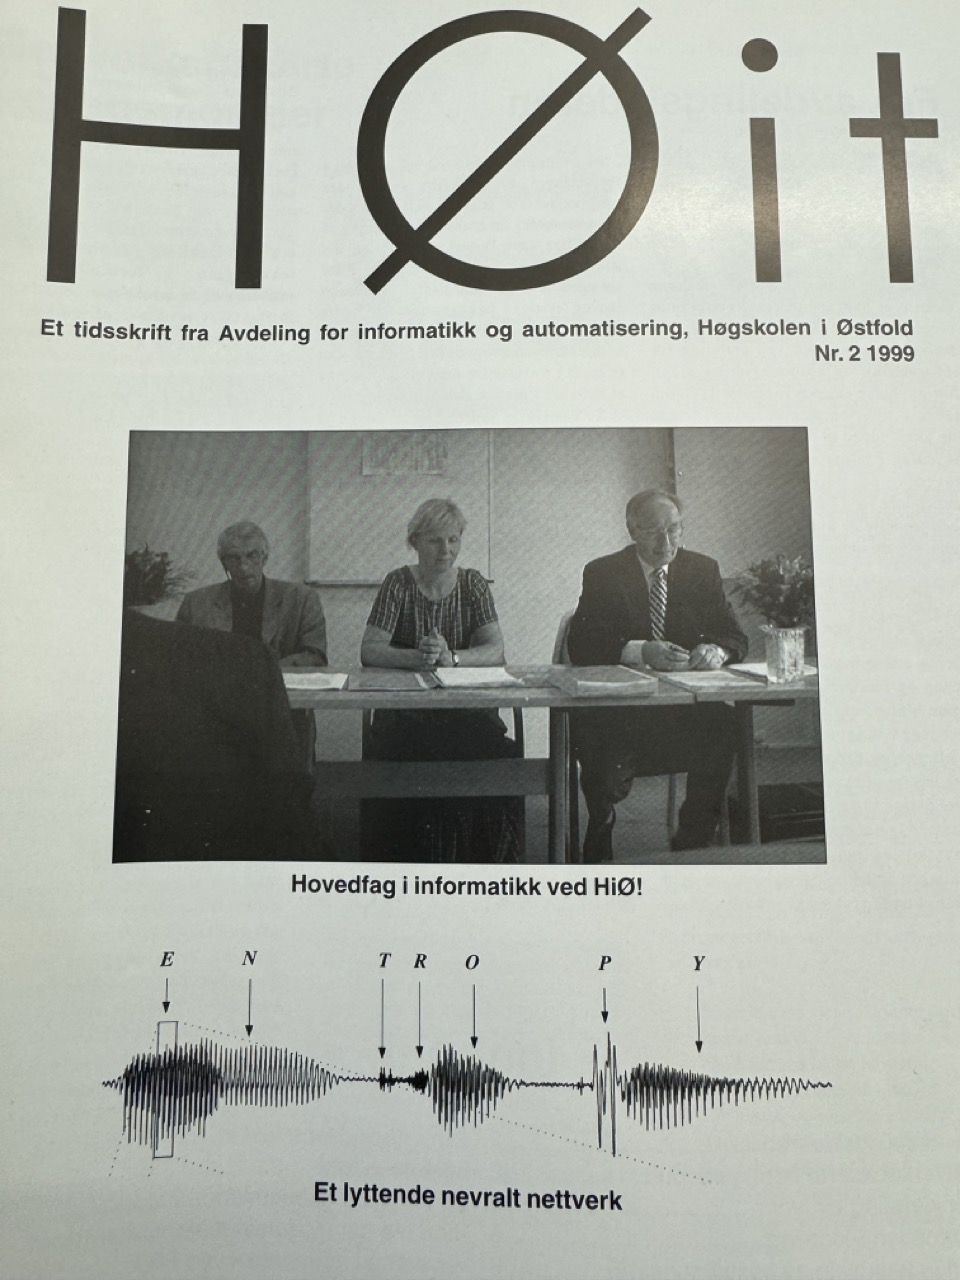 Forsidebilde fra HØit - IT-avdelingens internavis fra 1999. Faksimile. 